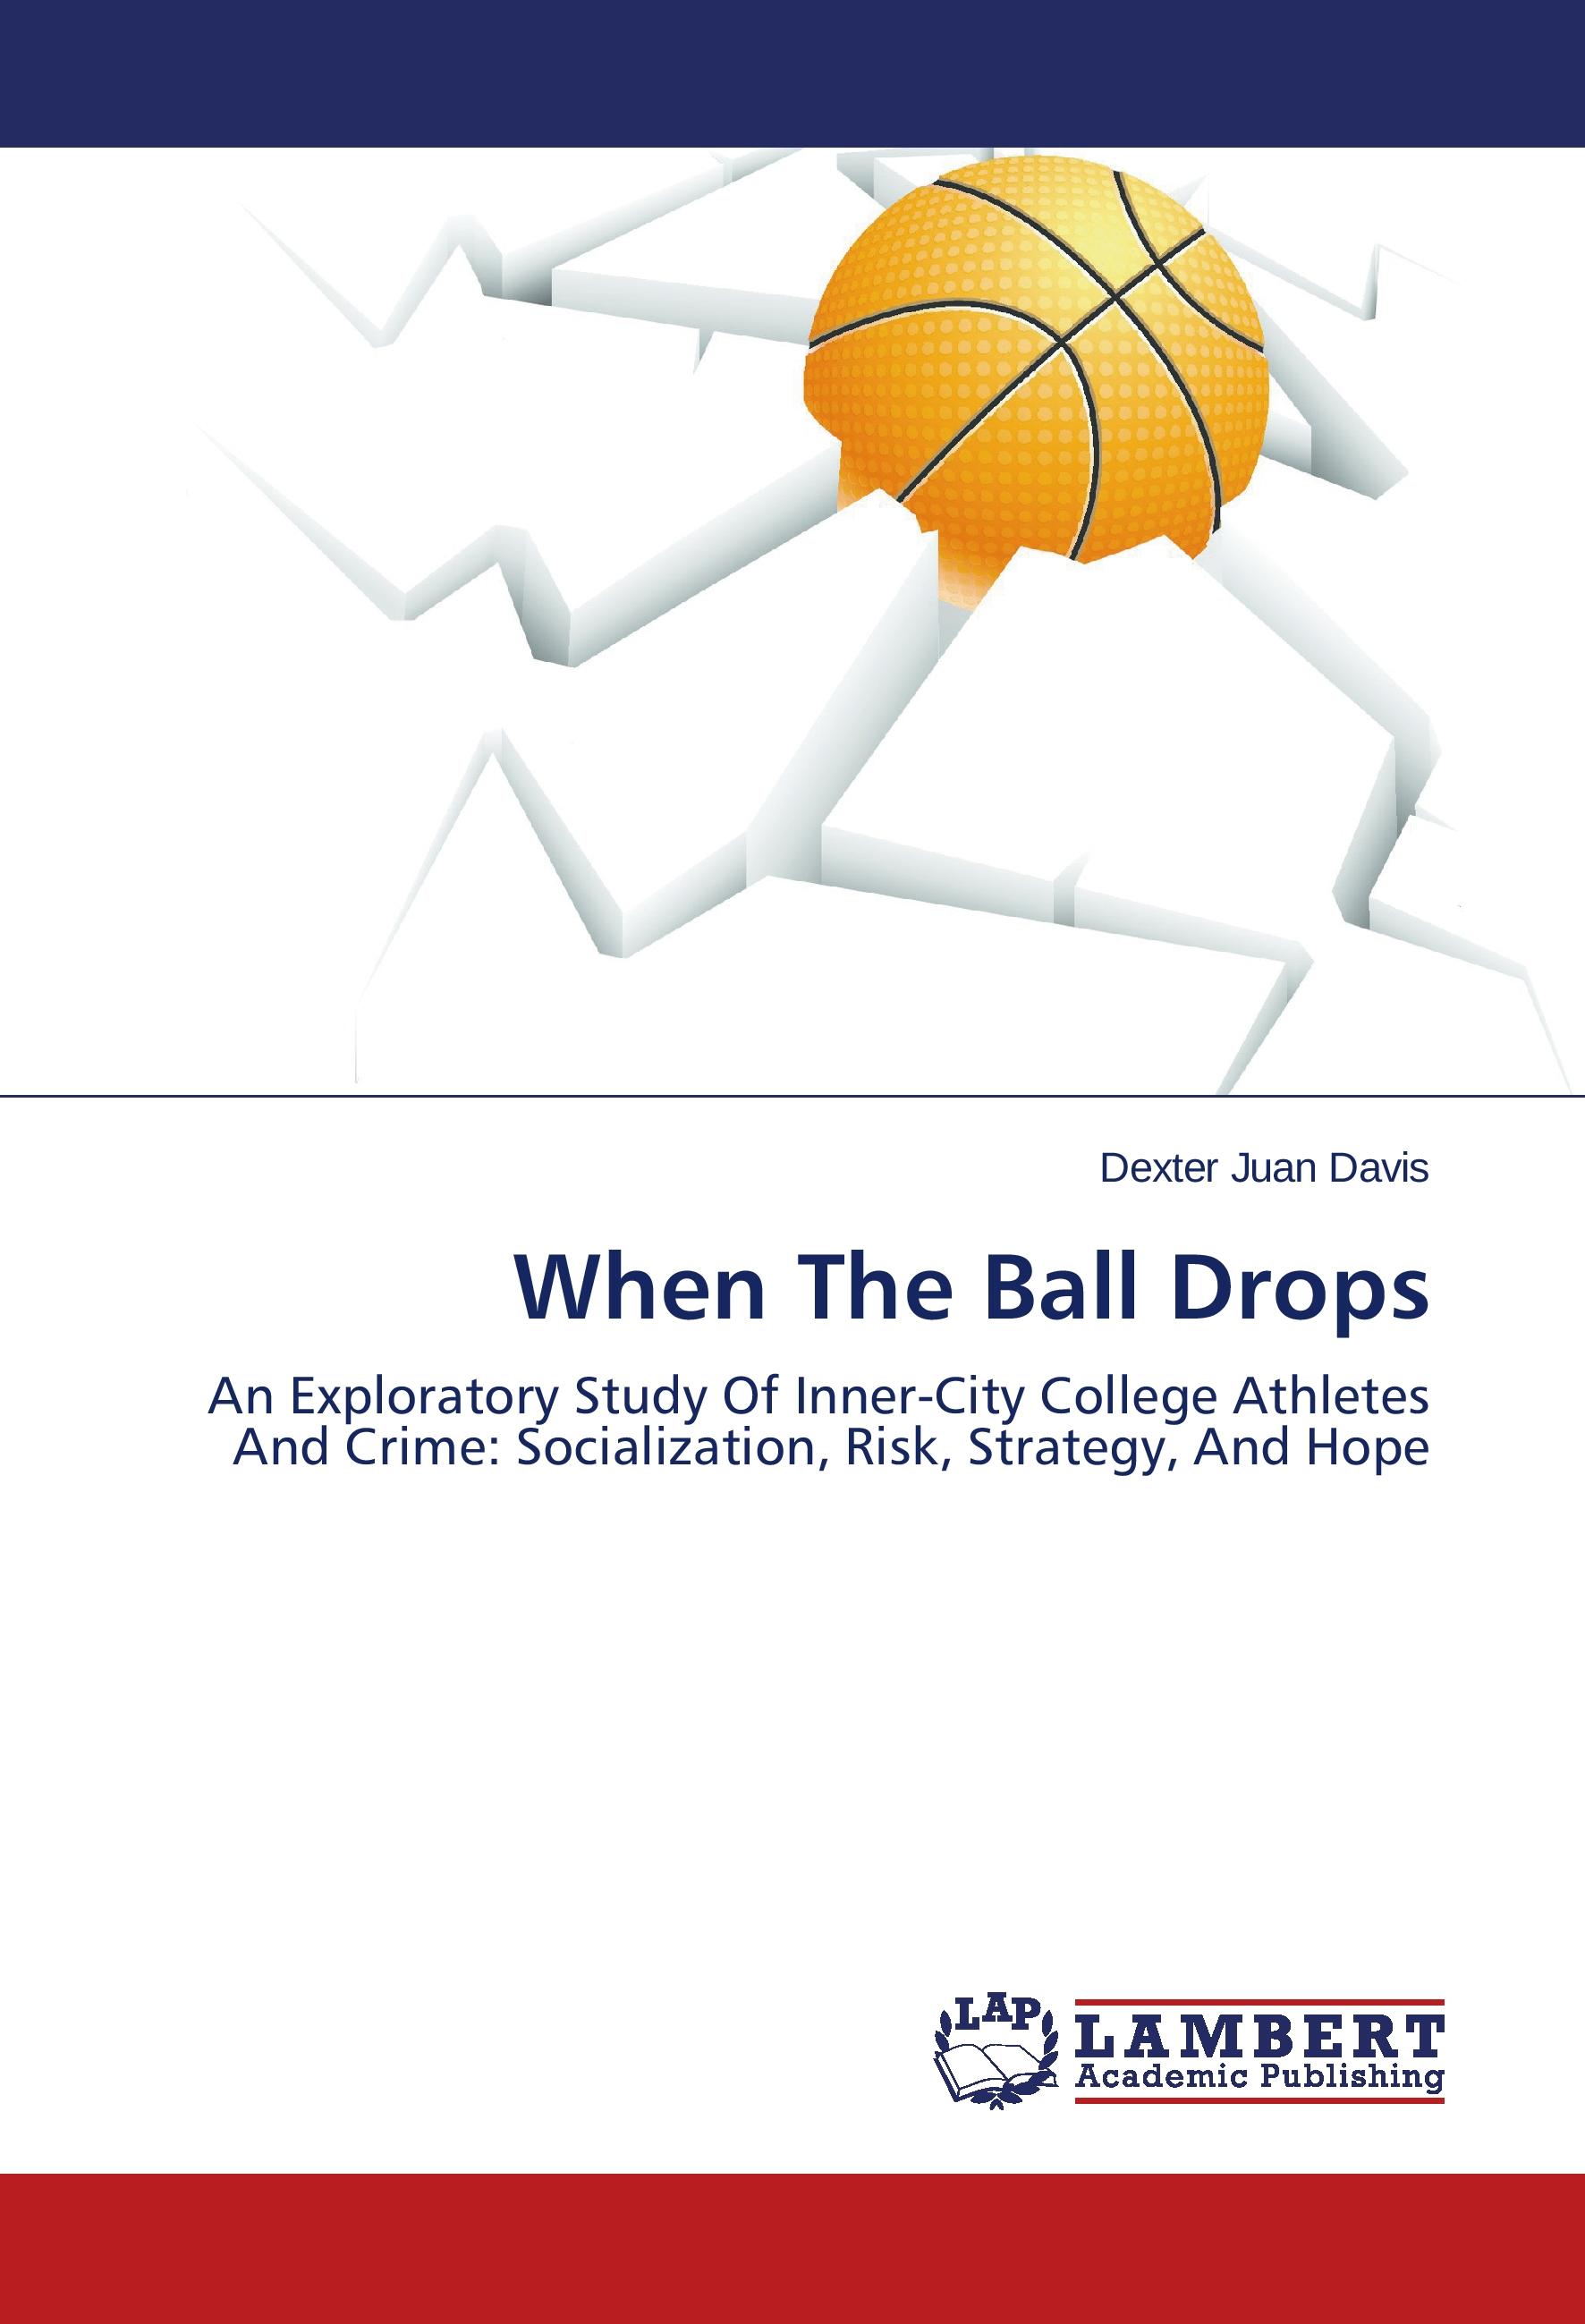 When The Ball Drops - Dexter Juan Davis